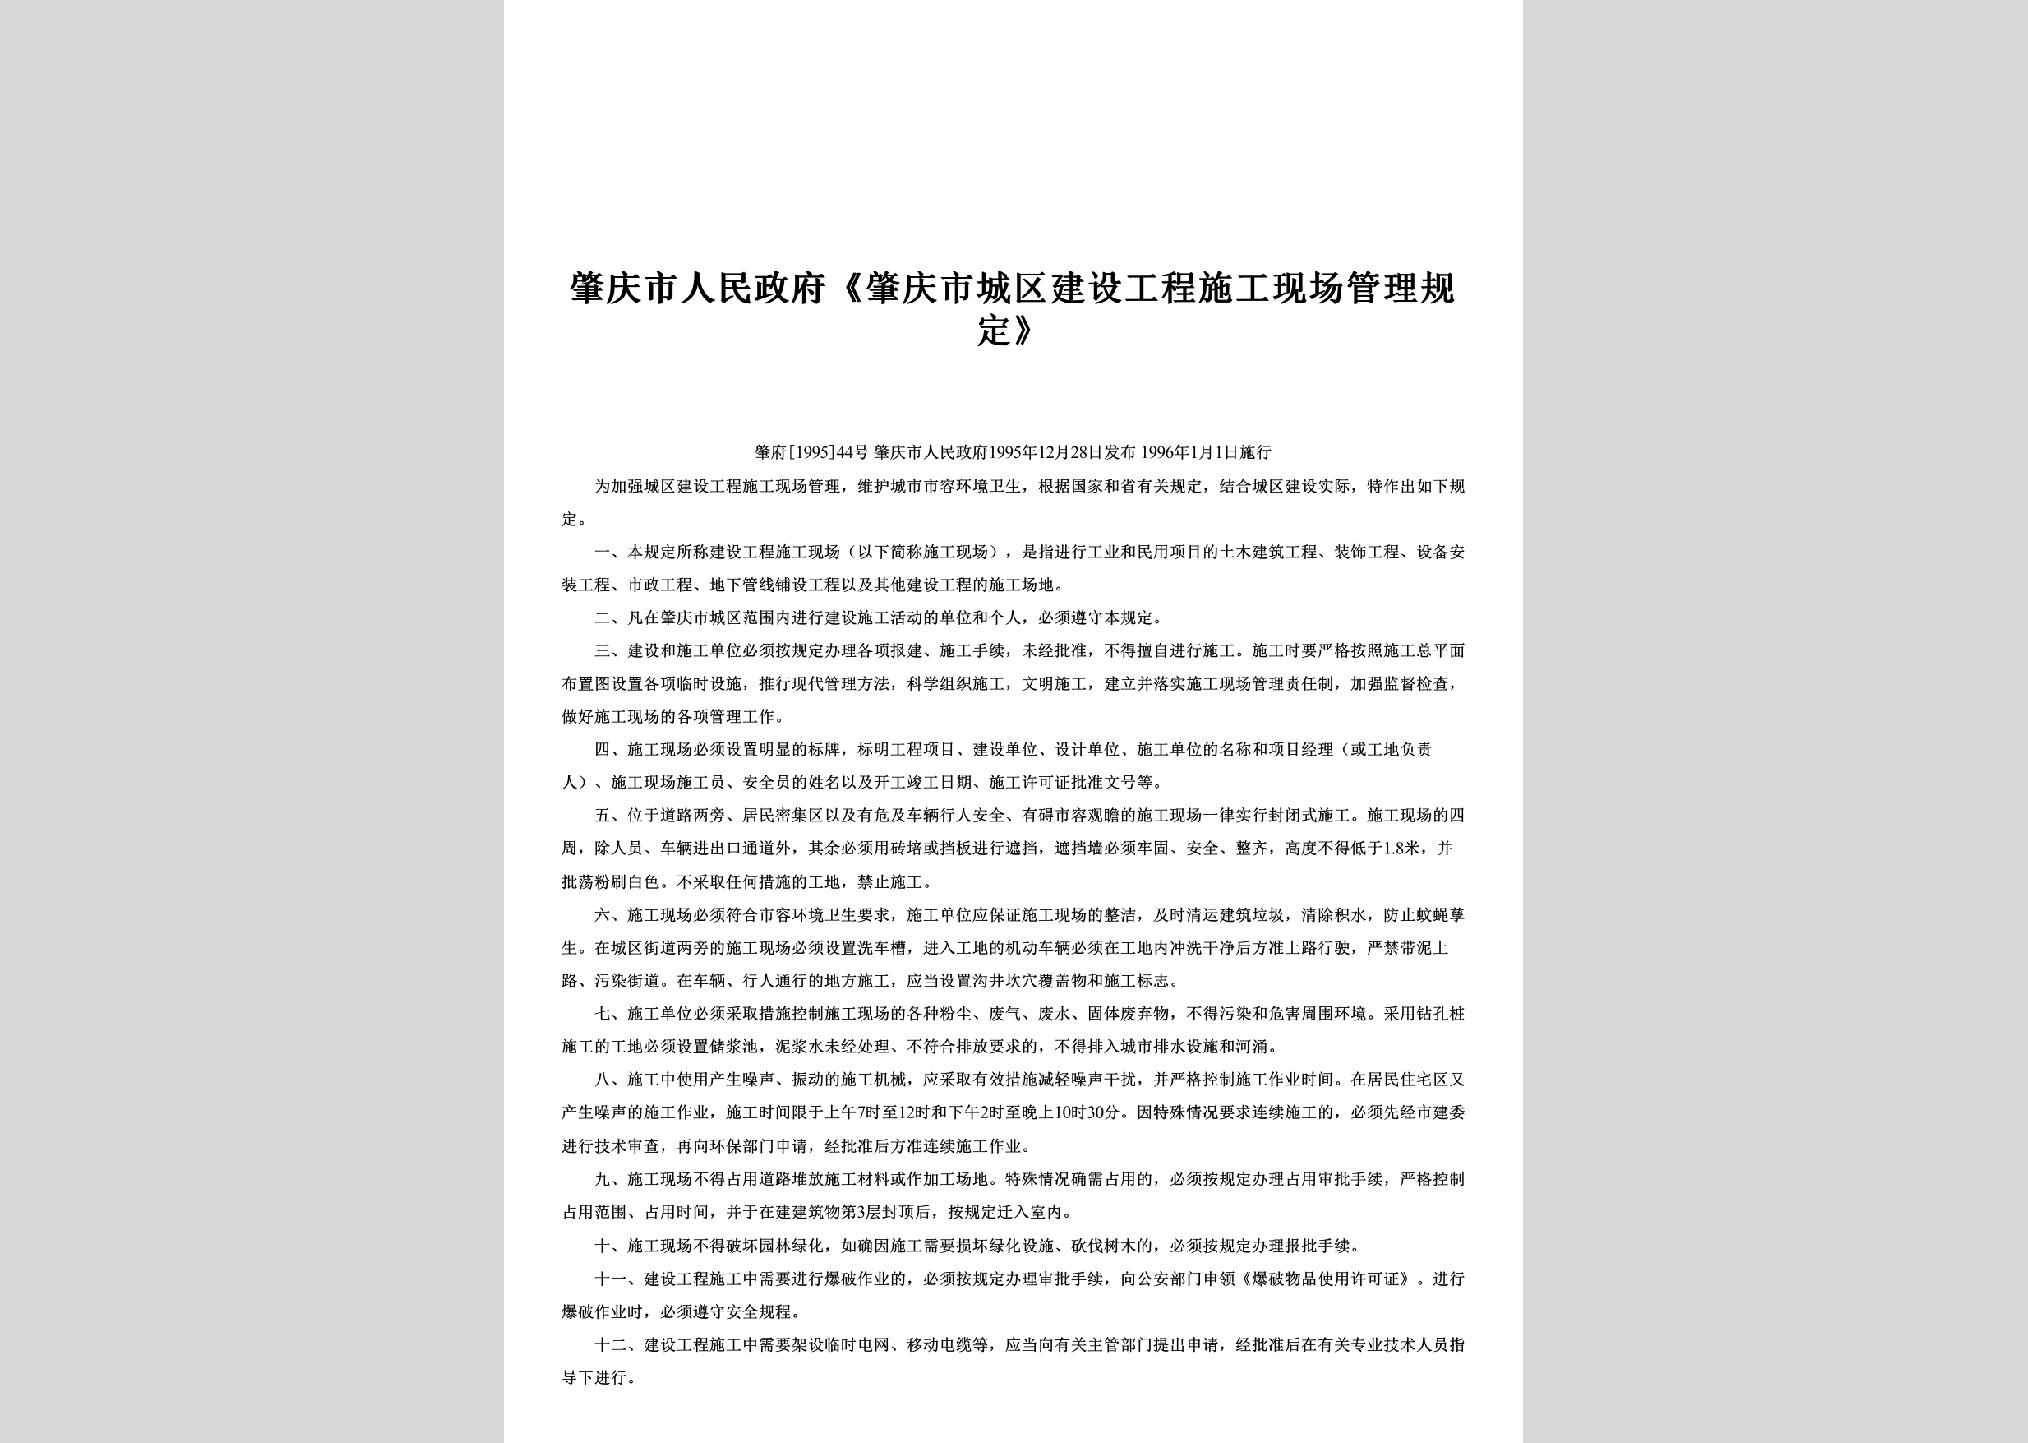 肇府[1995]44号：《肇庆市城区建设工程施工现场管理规定》